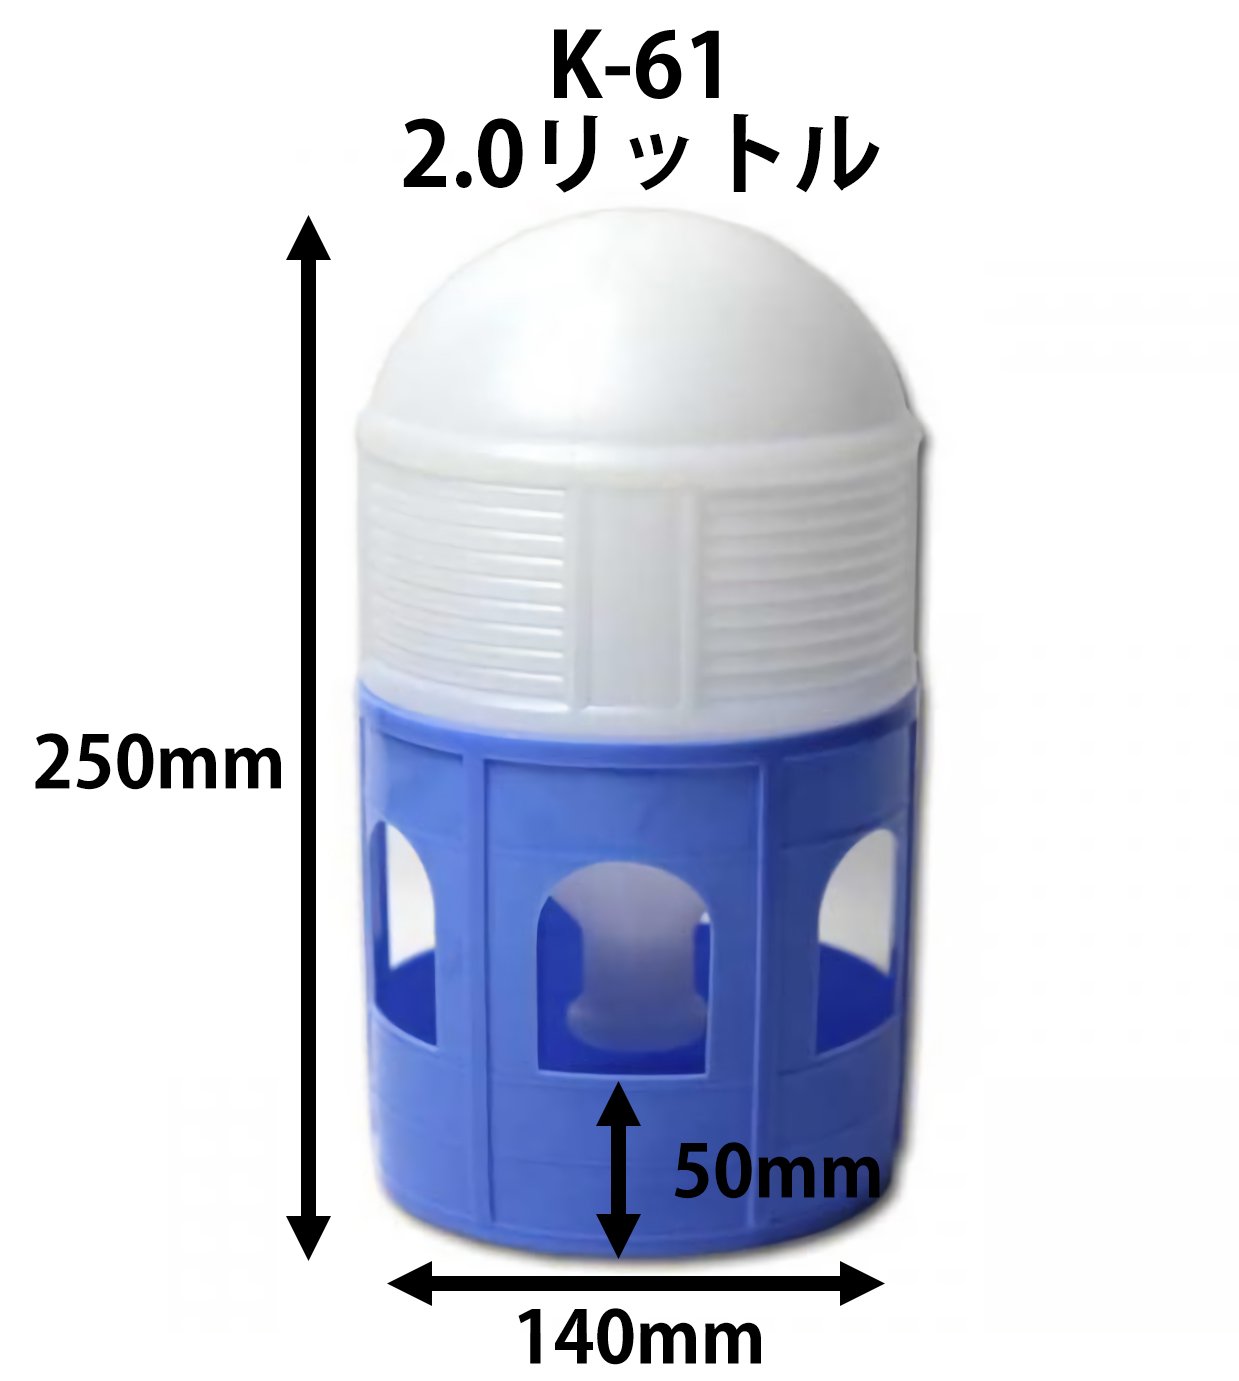 コバヤシ サイホン型給水器 K-61 大(2.0L) - ベルバード | 孵卵器 